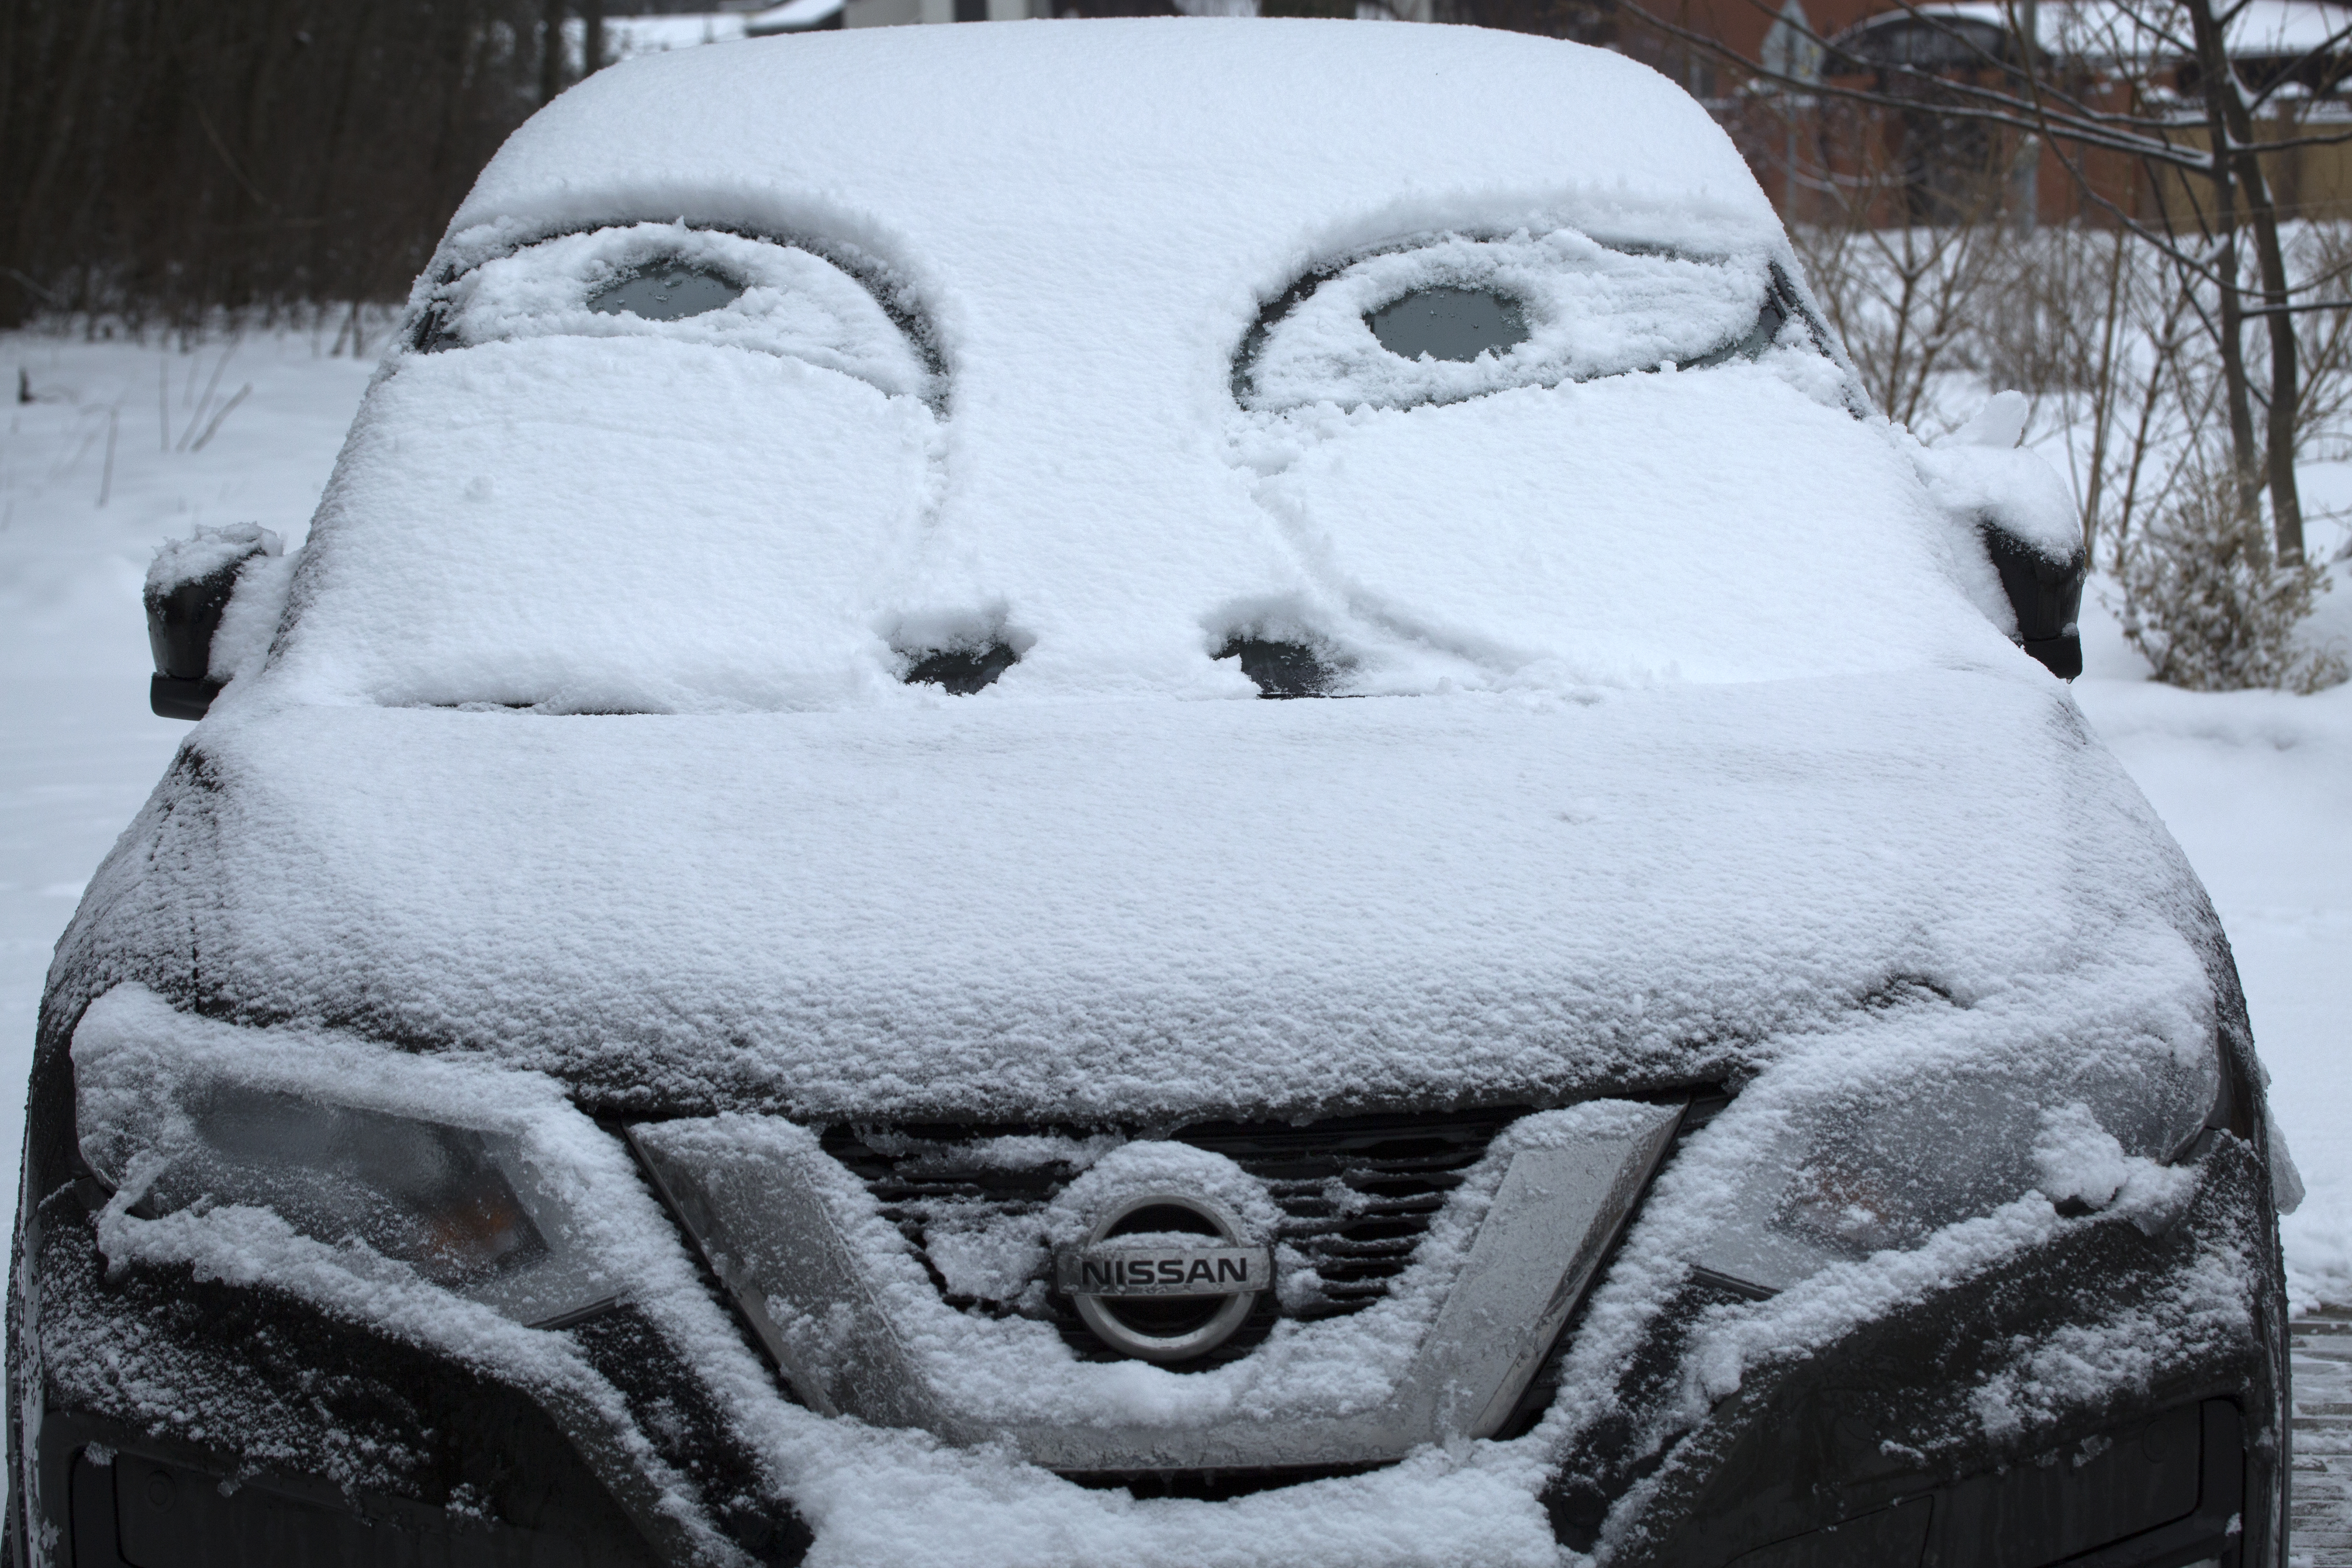 ГИБДД по Свердловской области попросило водителей не пользоваться авто из-за сильнейшего снегопада и гололеда